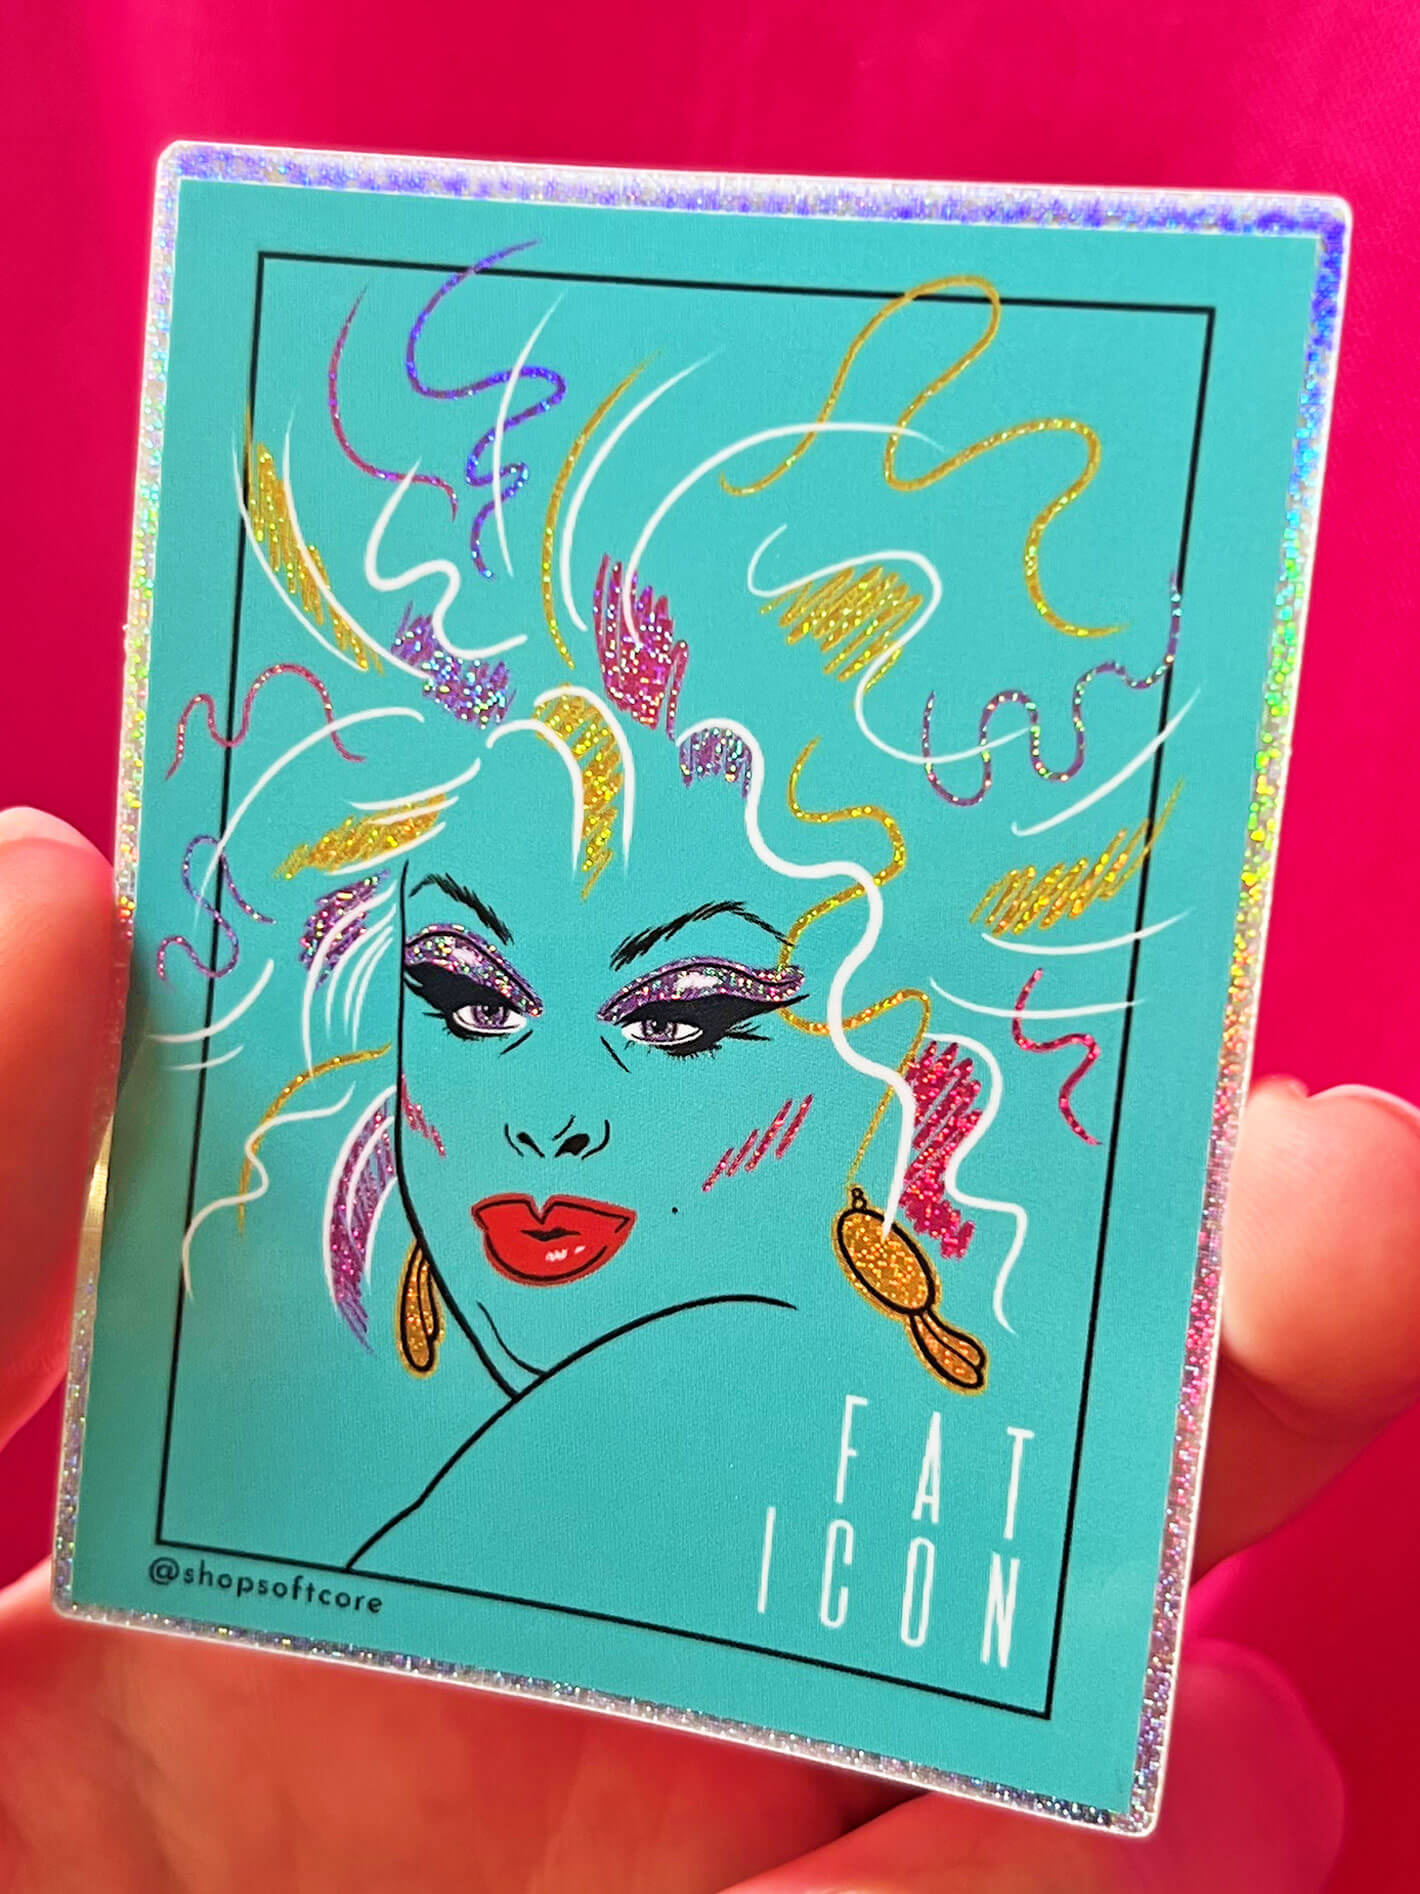 Gay Pride glitter drag queen sticker.